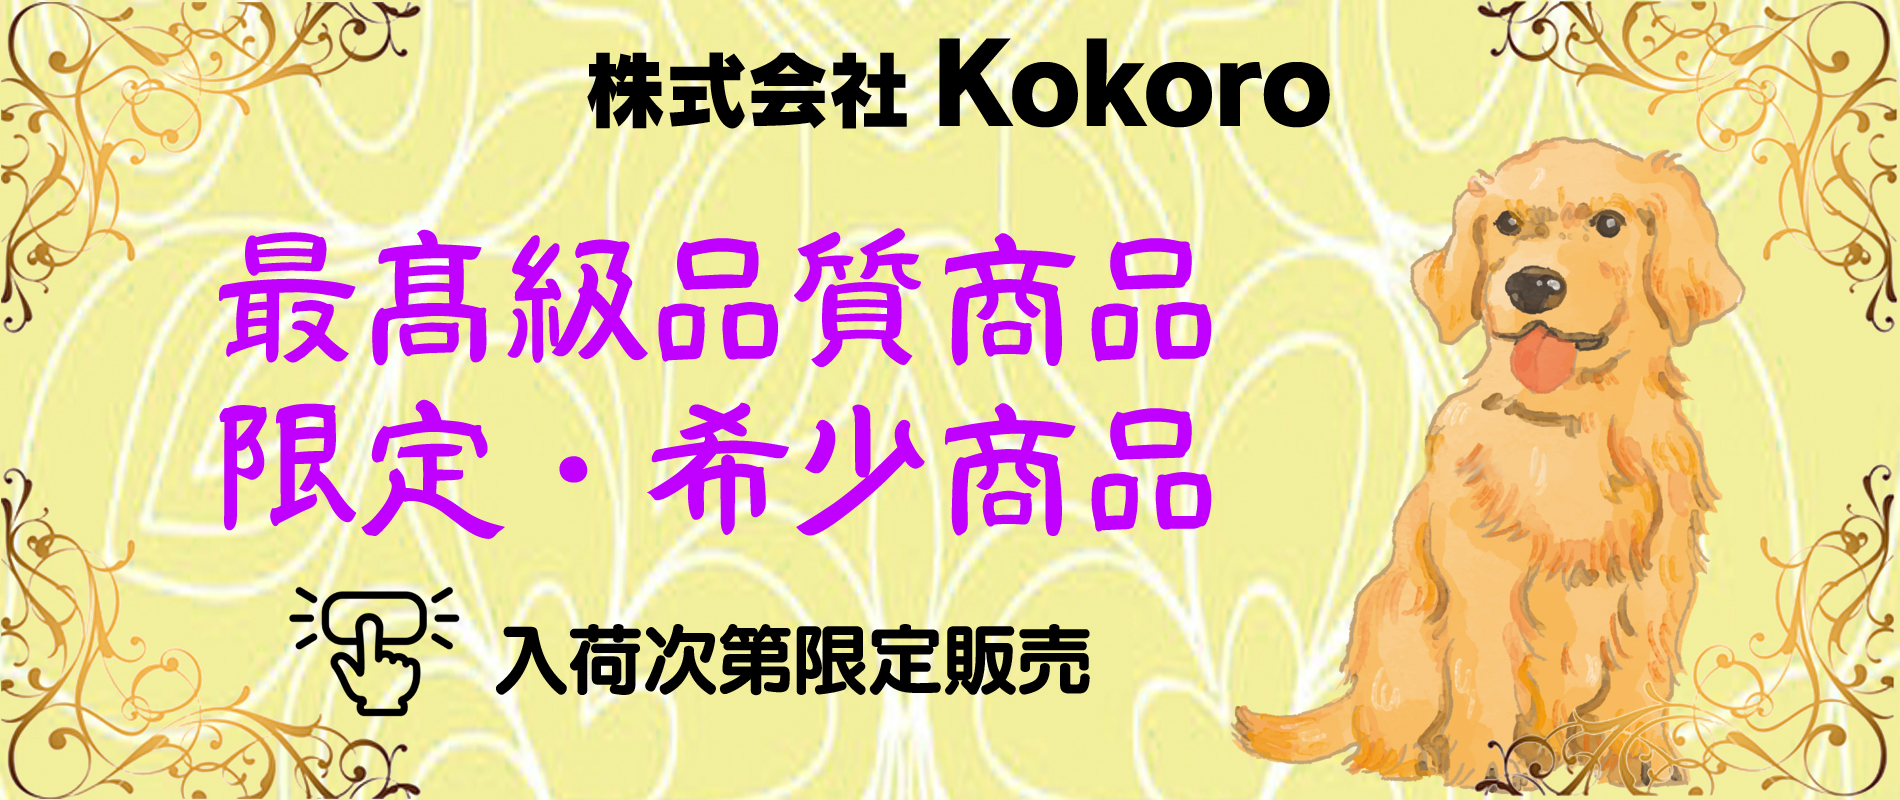 株式会社Kokoro | 広島県産の天然素材のペットフード自社工場で製造から販売まで